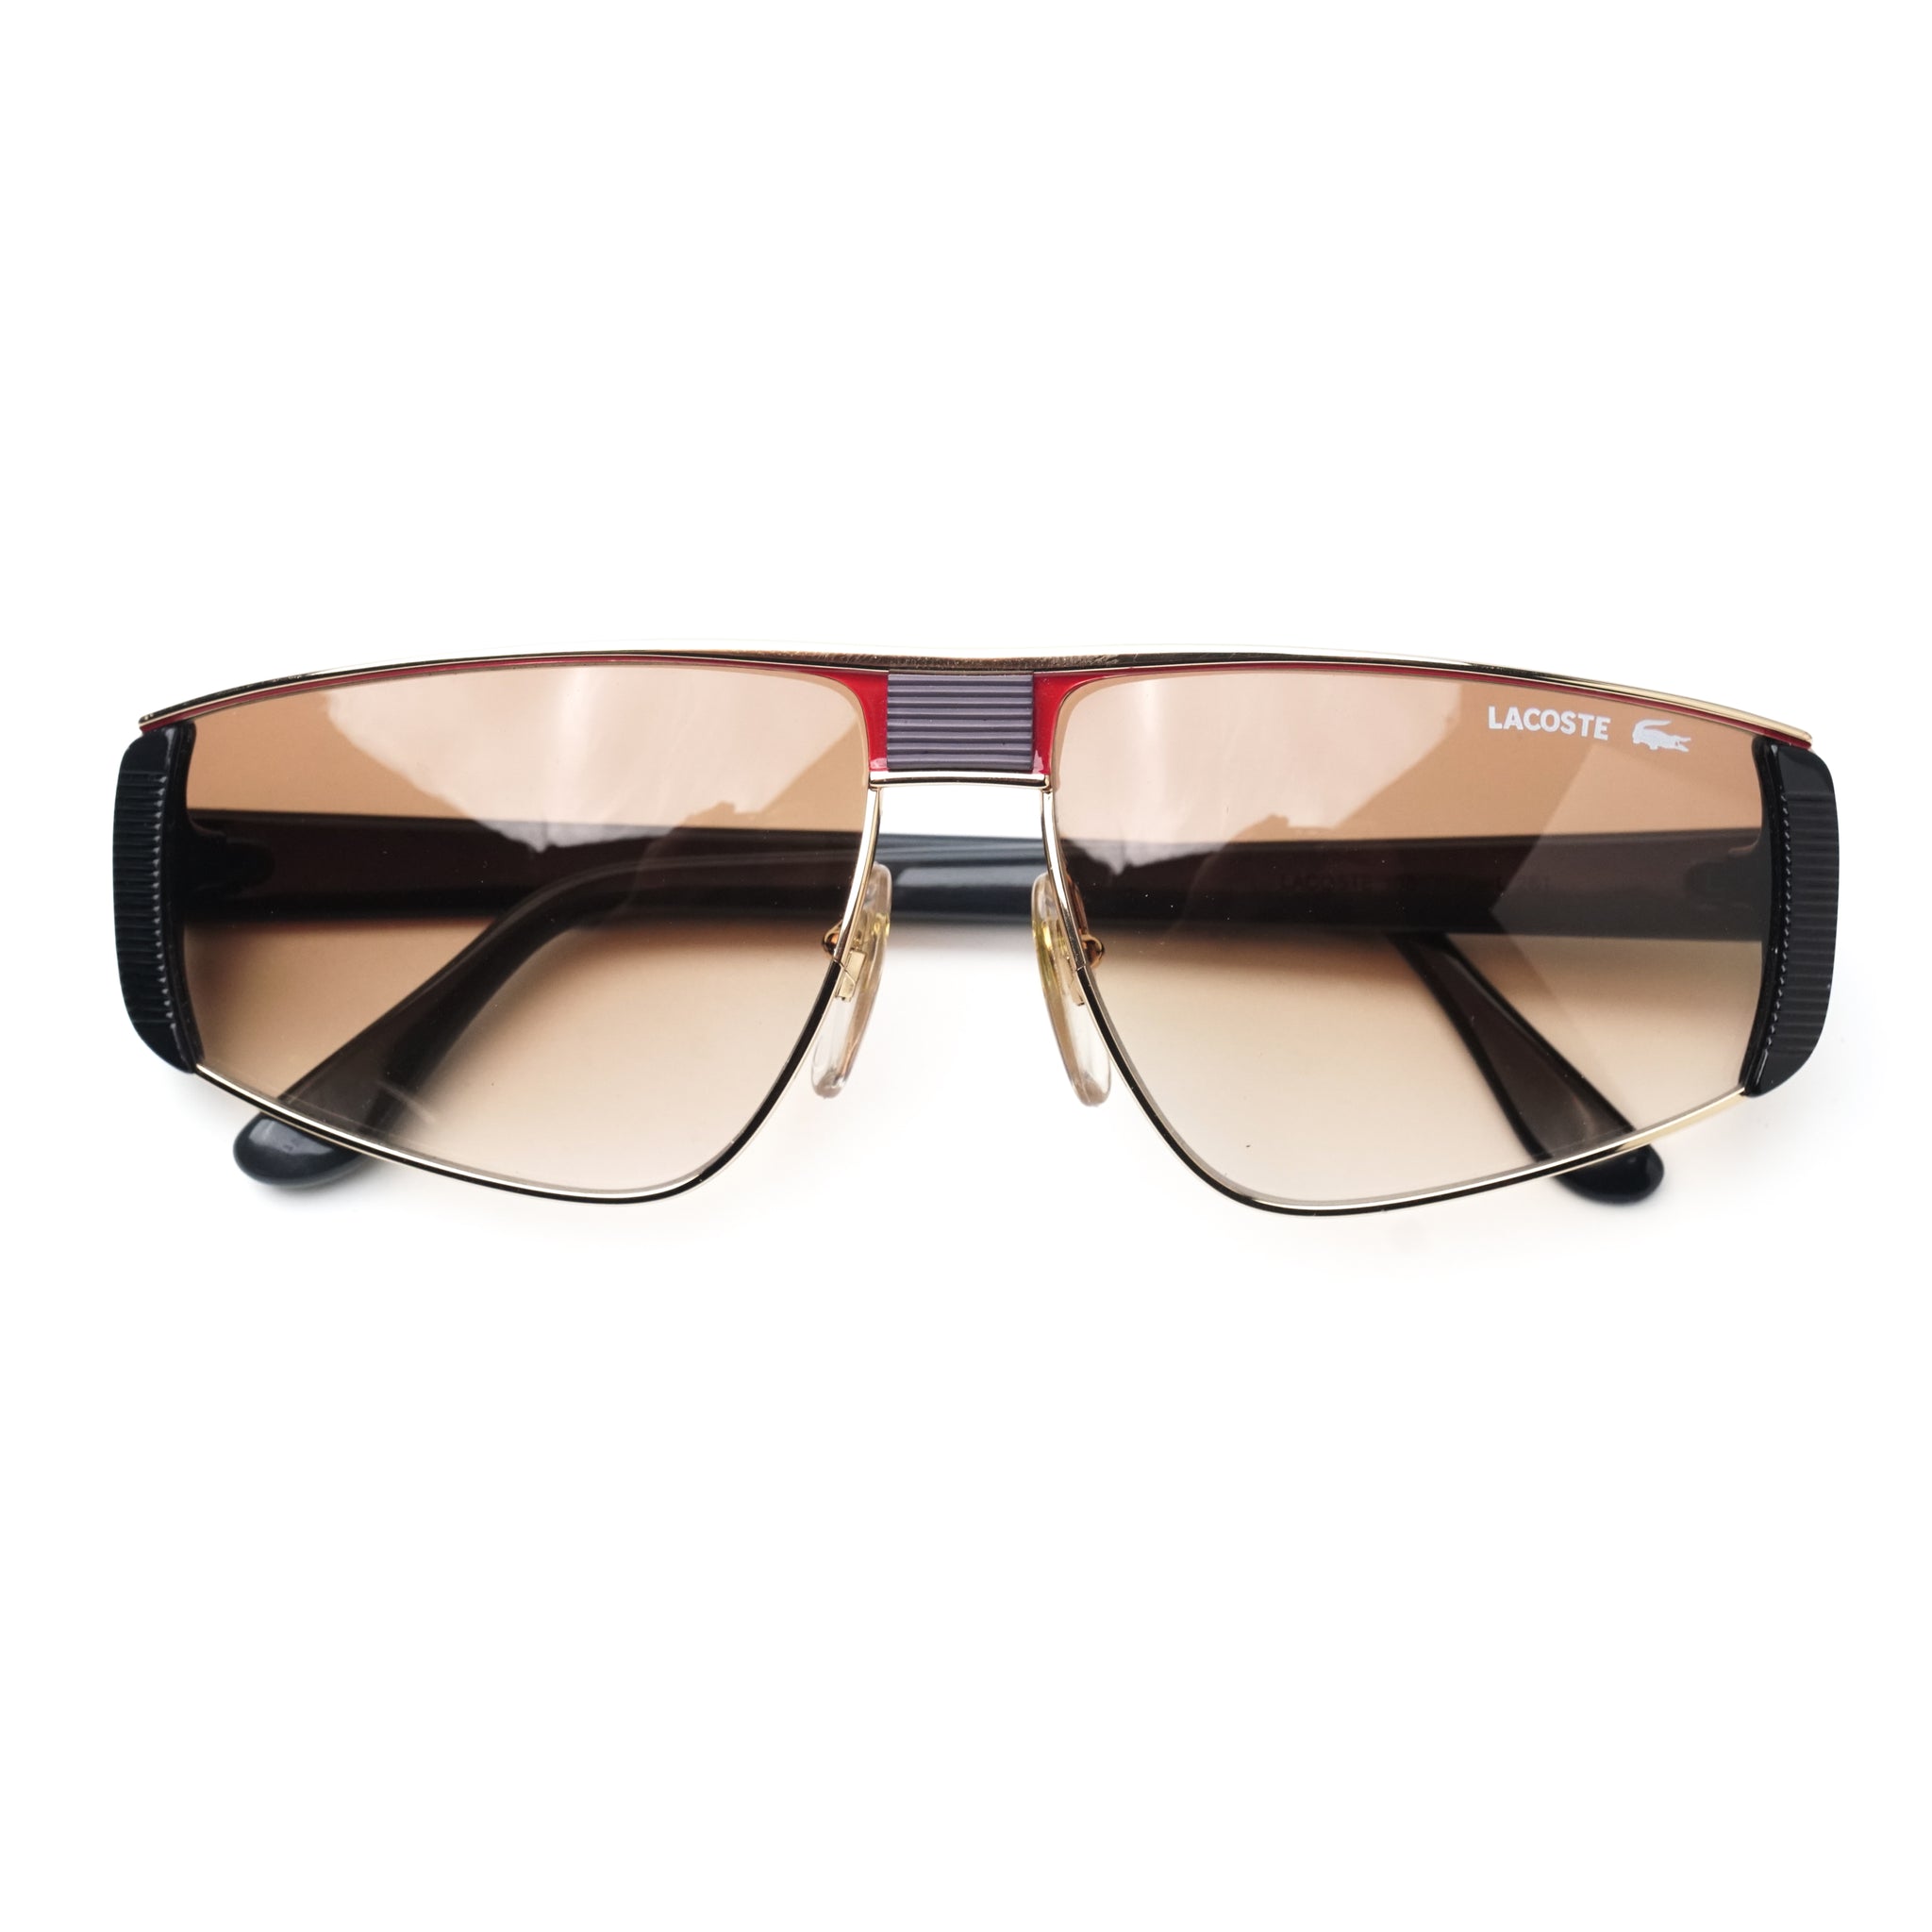 Sunglasses Lacoste L979S 230 56-18 Dark havana in stock | Price 103,43 € |  Visiofactory